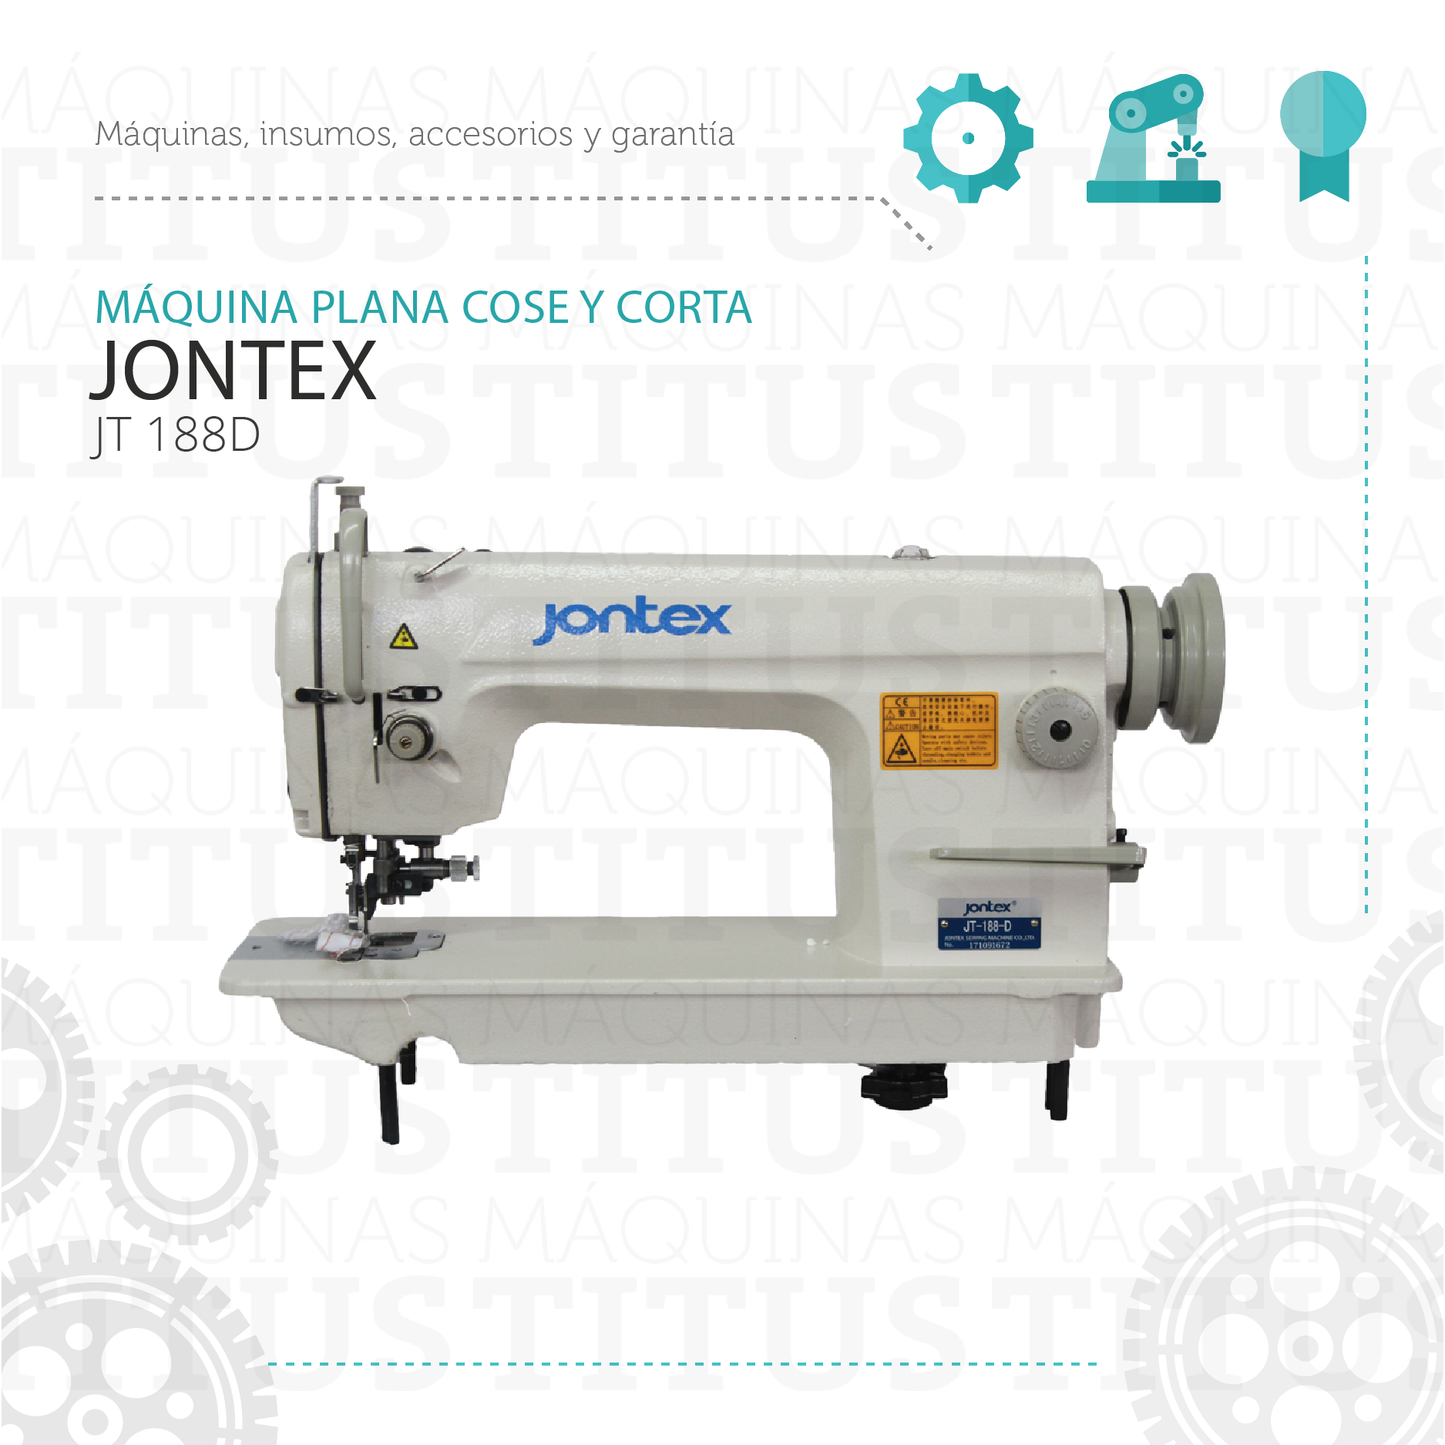 Plana Cose y Corta Jontex JT 188 D Maquina De Coser - Commercio